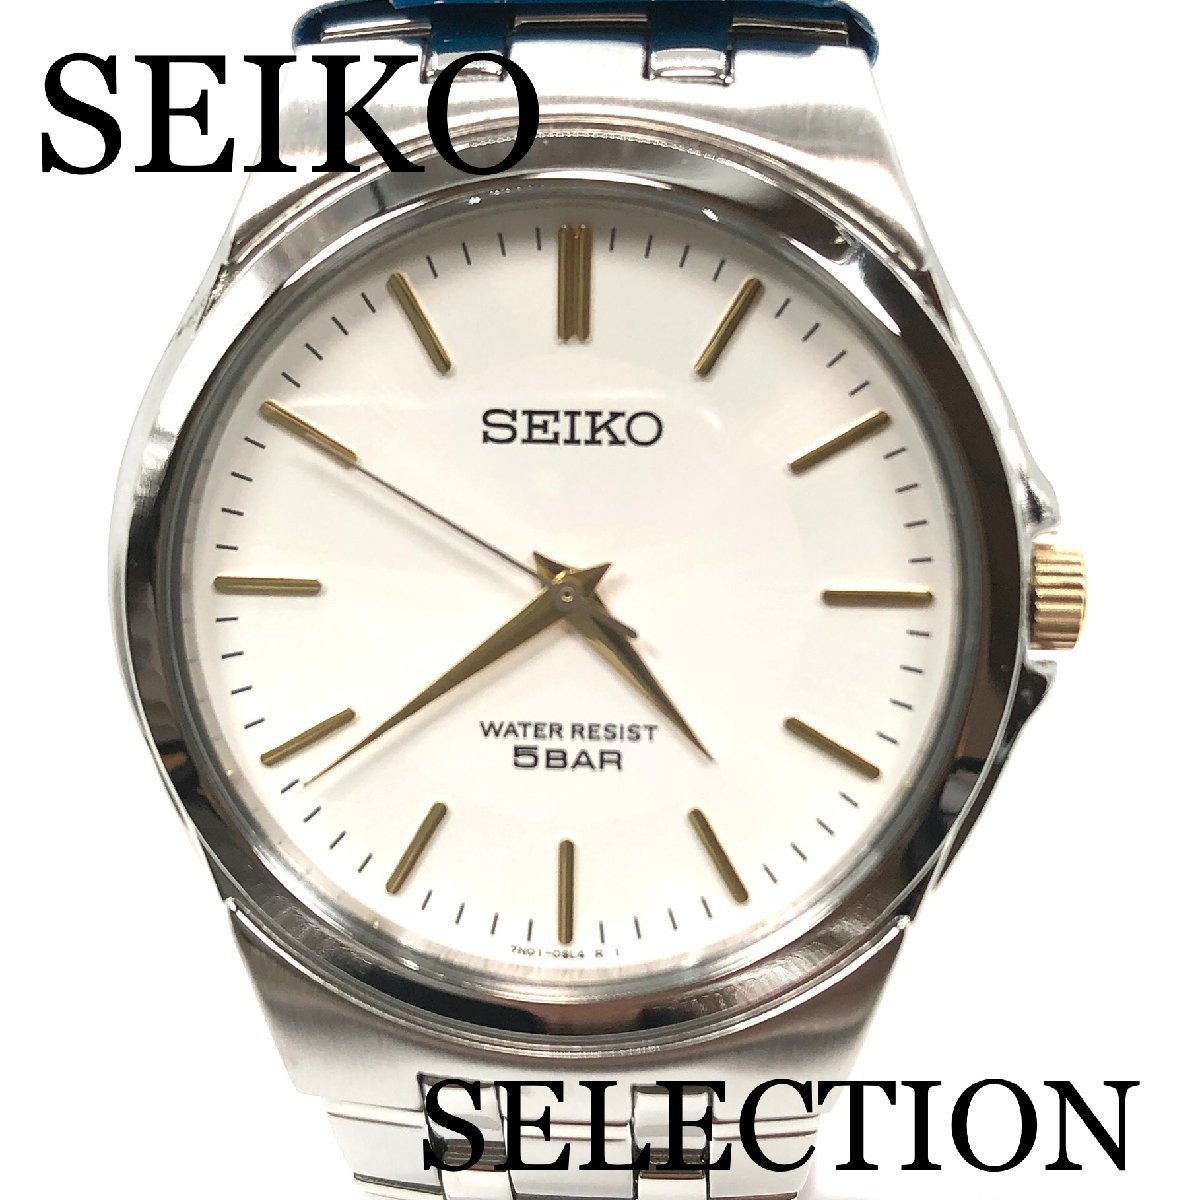 新品正規品『SEIKO SELECTION』セイコー セレクション 薄型腕時計 メンズ SCXP025【送料無料】_画像1